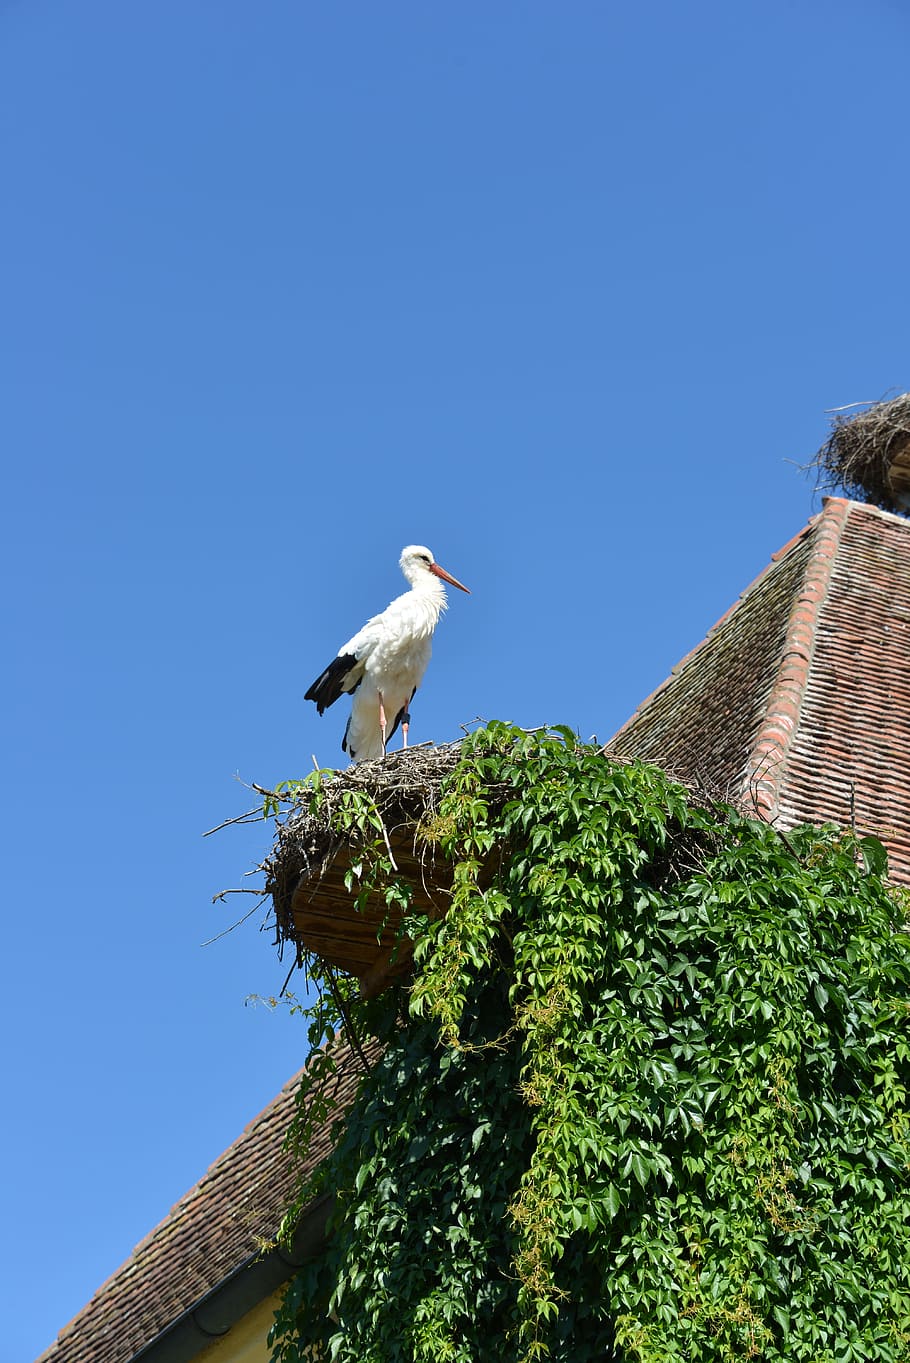 Stork, Bird, Animal, Rattle, rattle stork, white stork, storchennest, nest, roof, brick